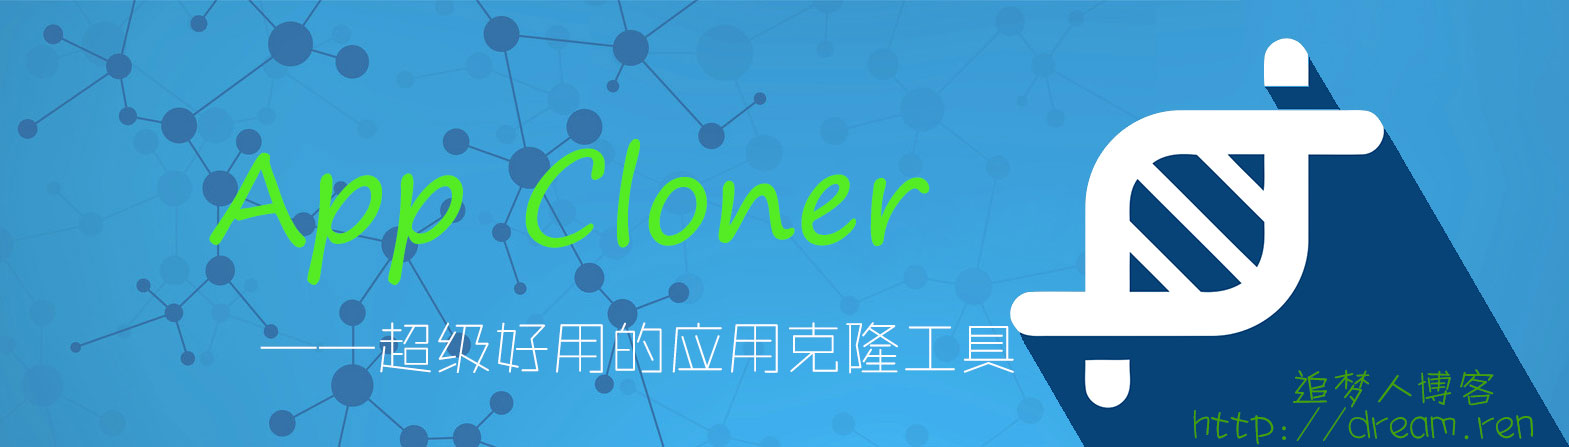 [安卓]App Cloner汉化版下载